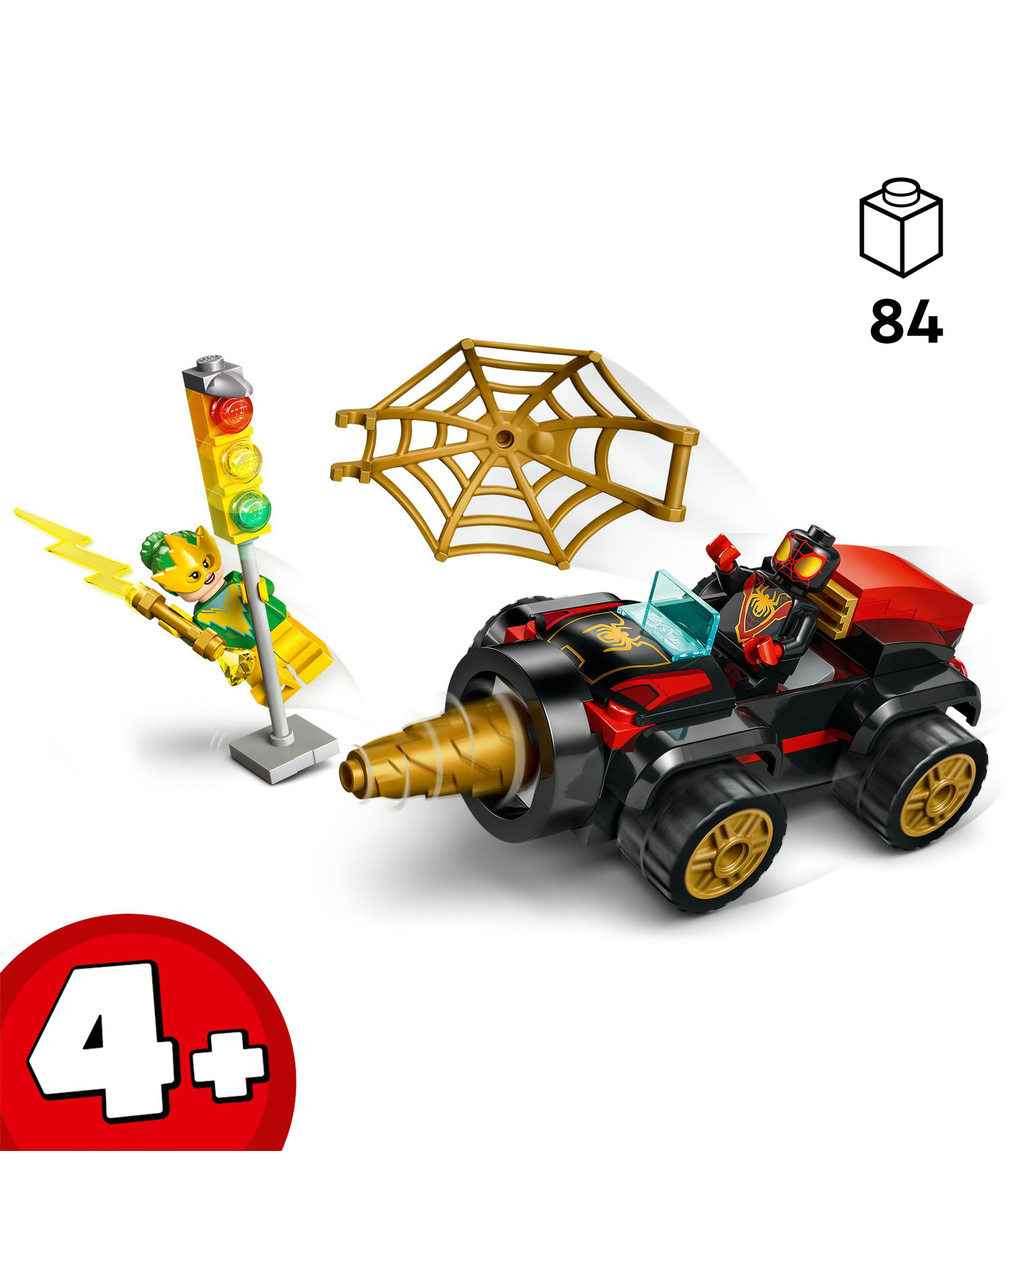 Spidey y sus increíbles amigos vehículo perforador de spiderman 10792 - lego - Lego Spidey